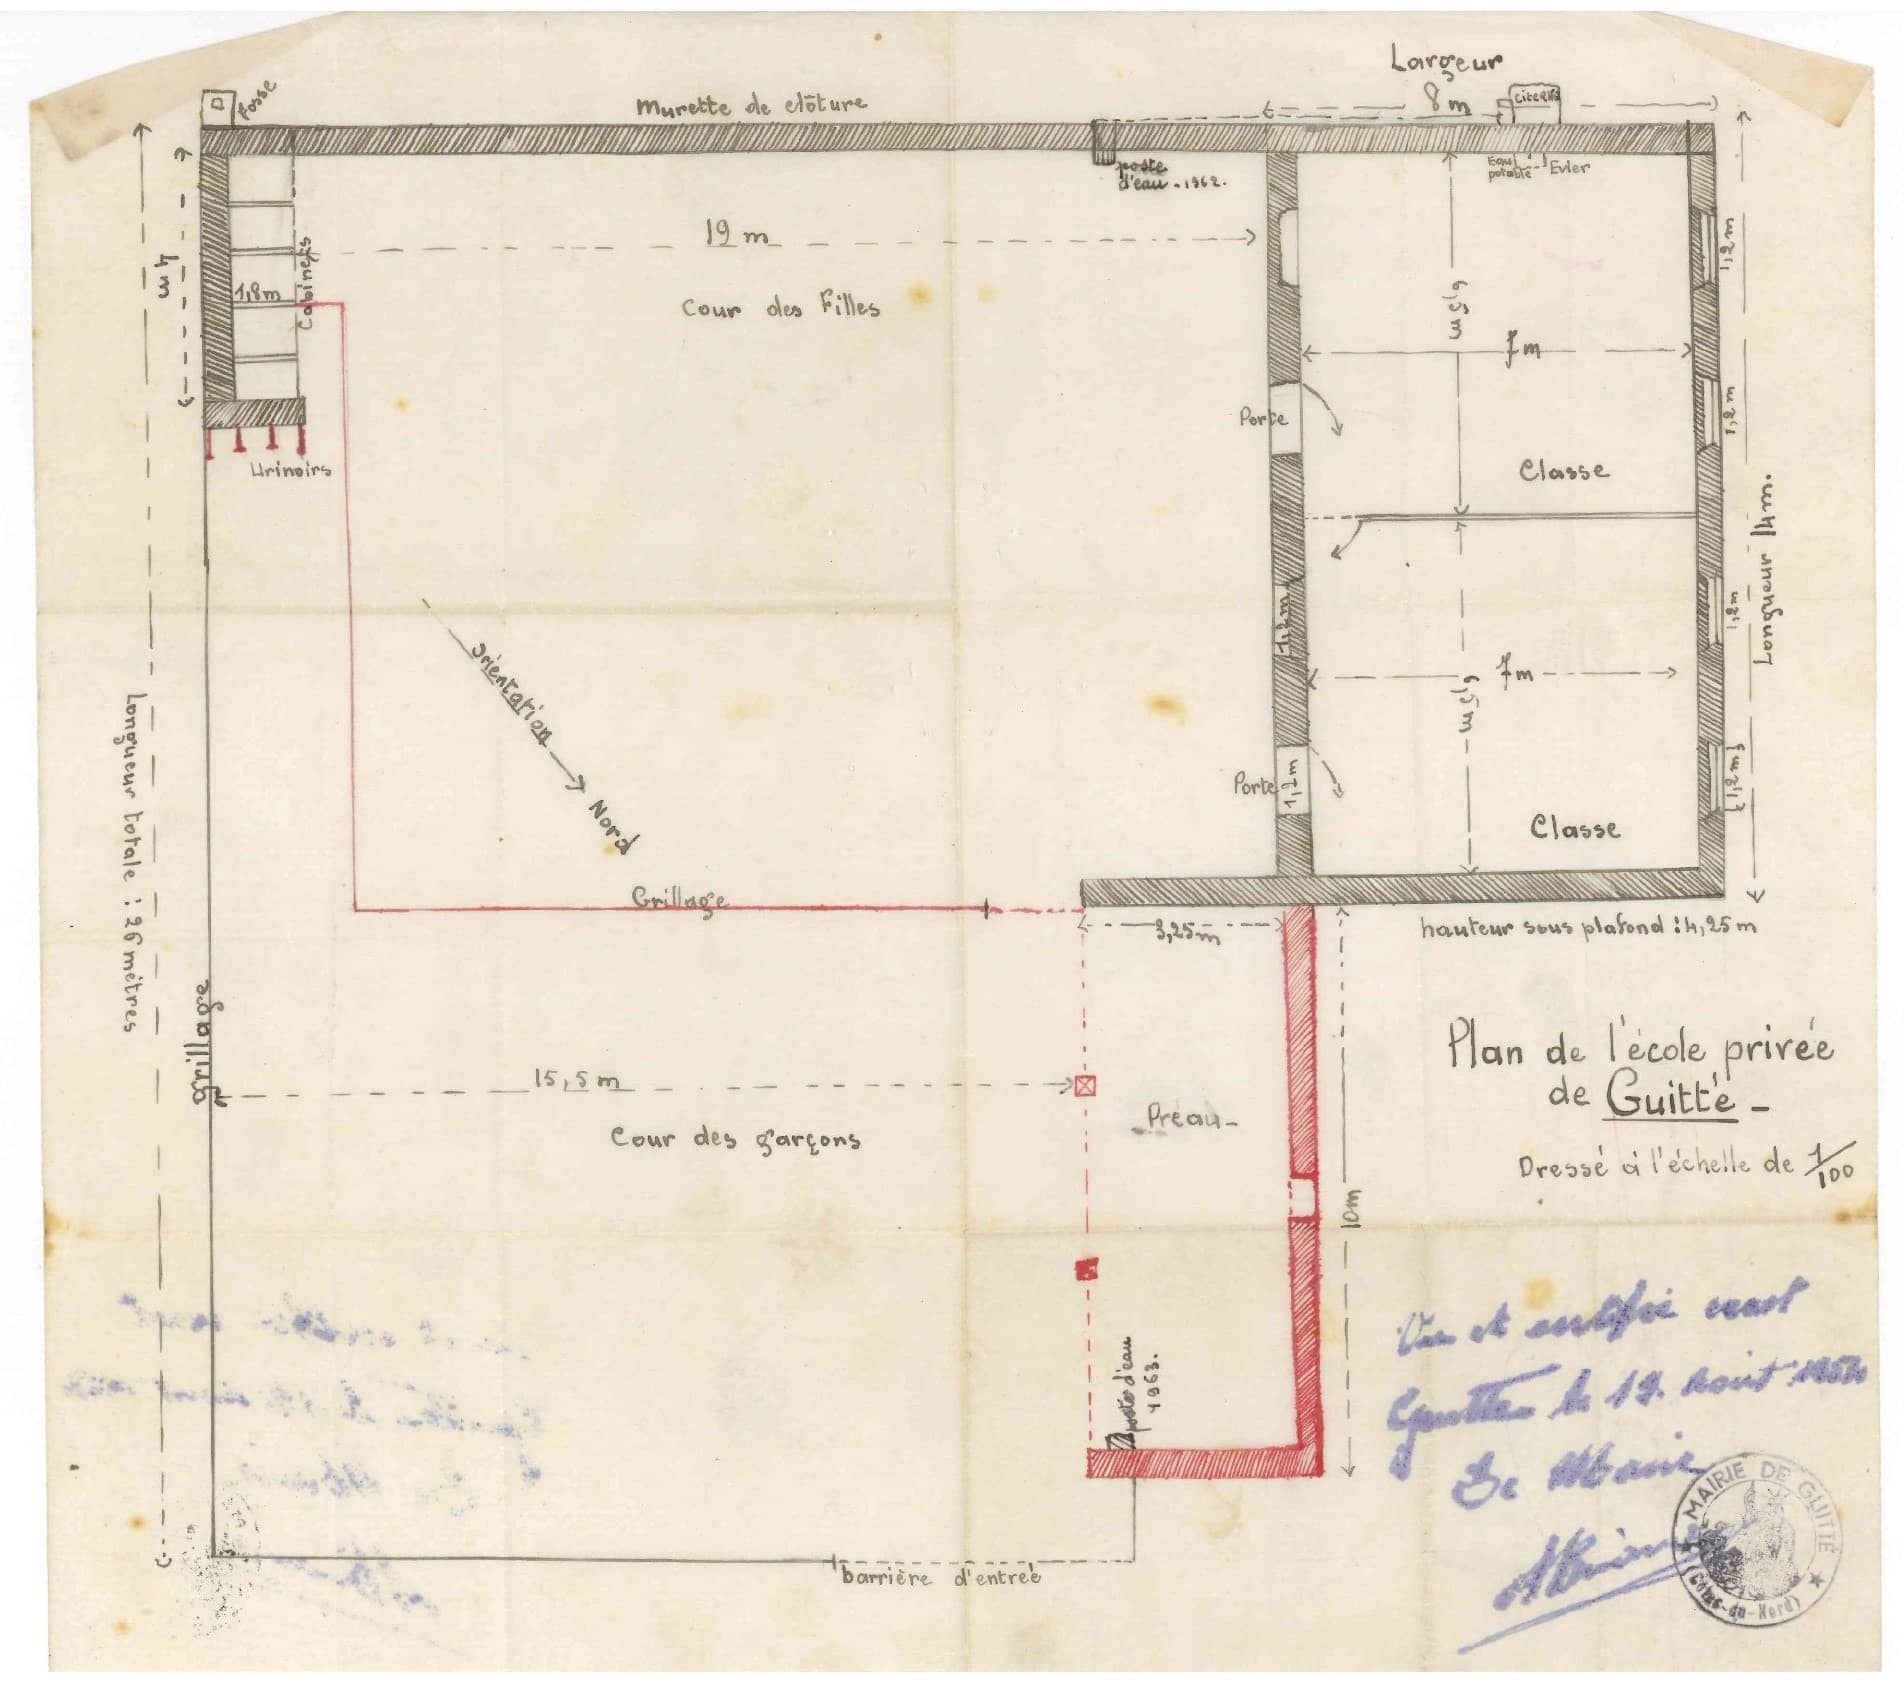 Plan de l'école de guitté 1954